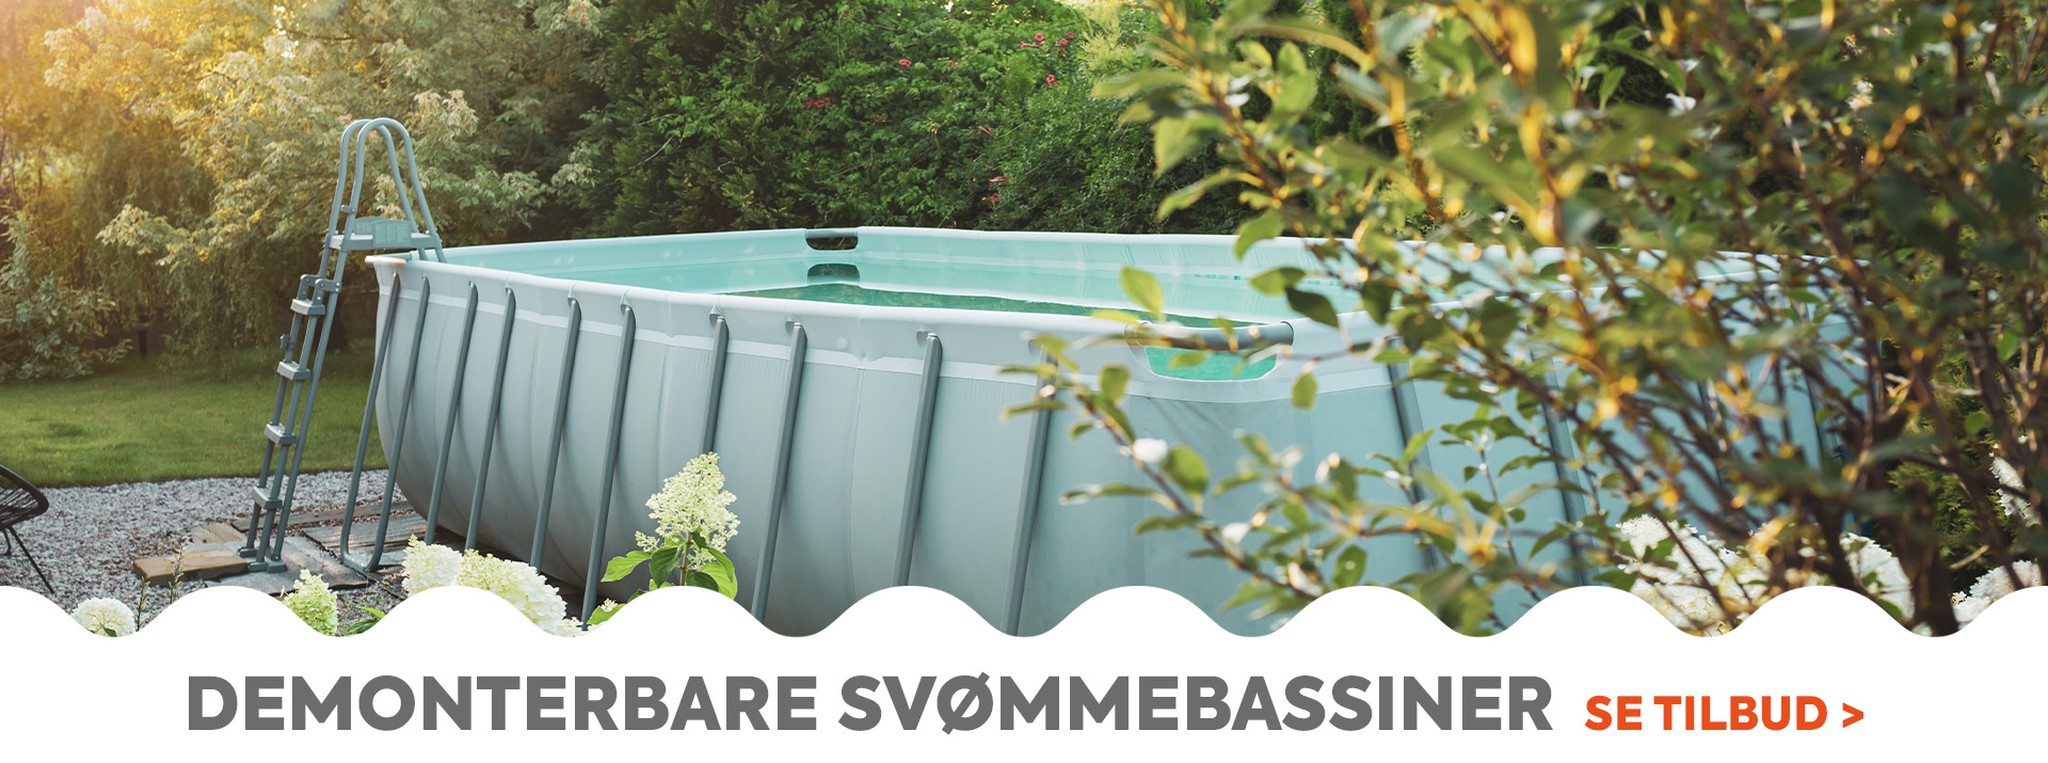 Oplev vores udvalg af aftagelige pools til den bedste pris til timevis af sjov i din have denne sommer.